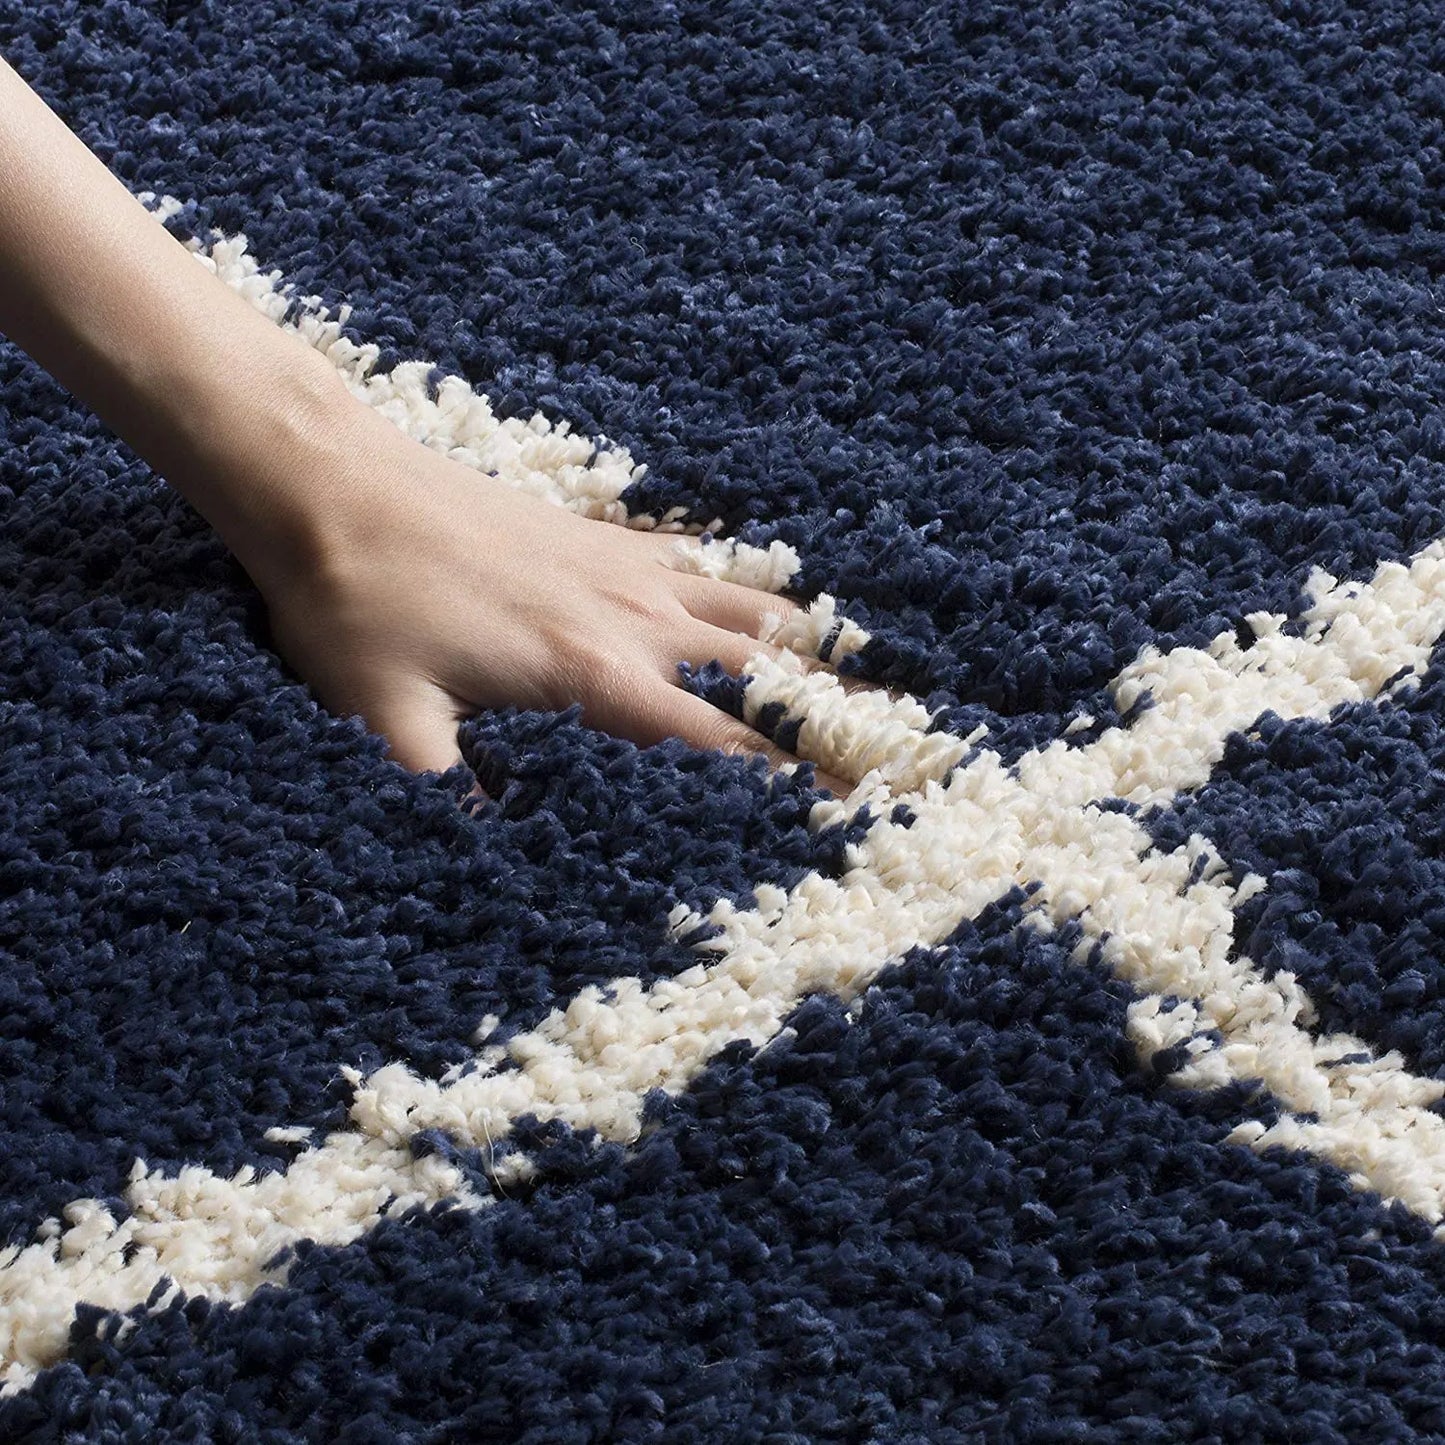 Avioni Home Atlas Collection – Microfiber Moroccan Style Lattice Carpets – Blue and White